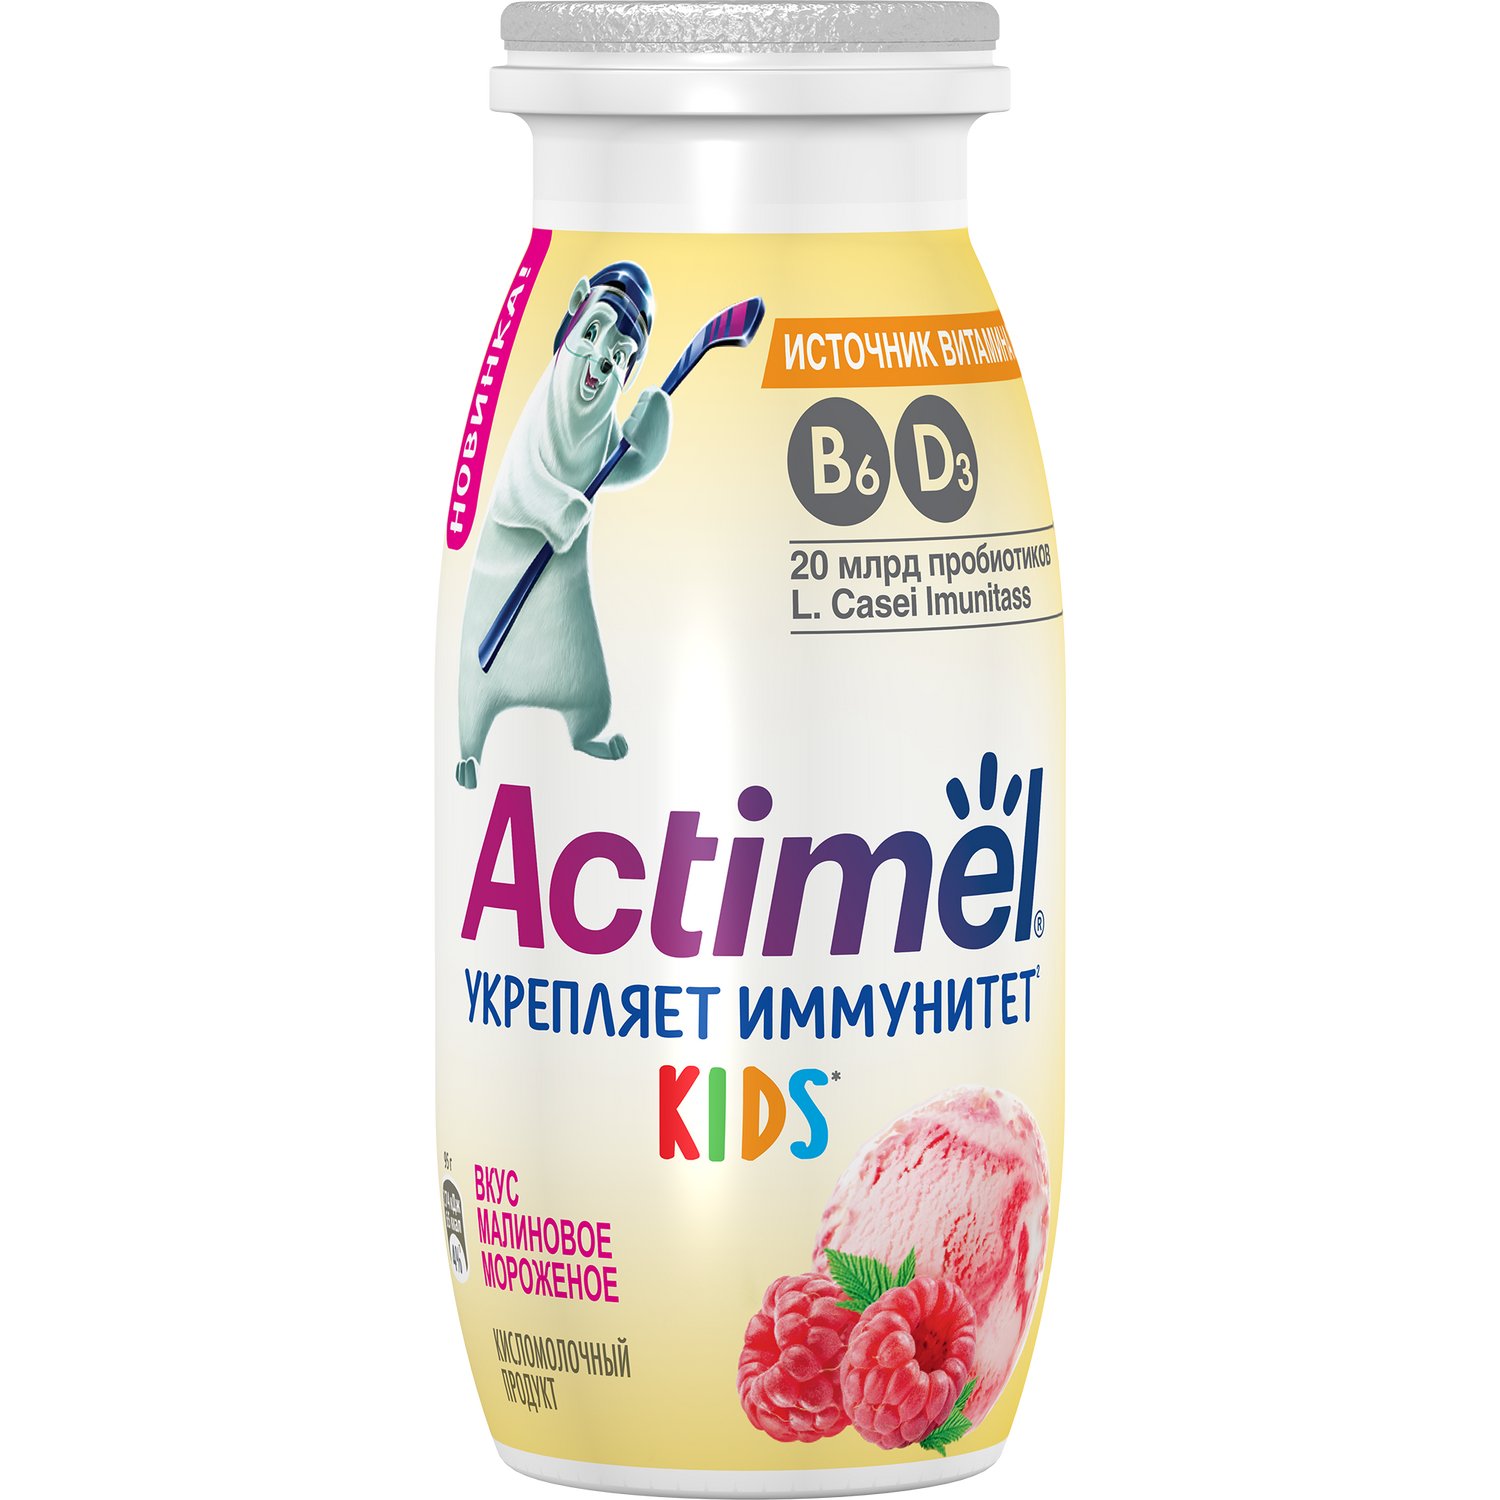 Напиток кисломолочный Actimel Kids со вкусом малинового мороженого 1,5%, 95 г